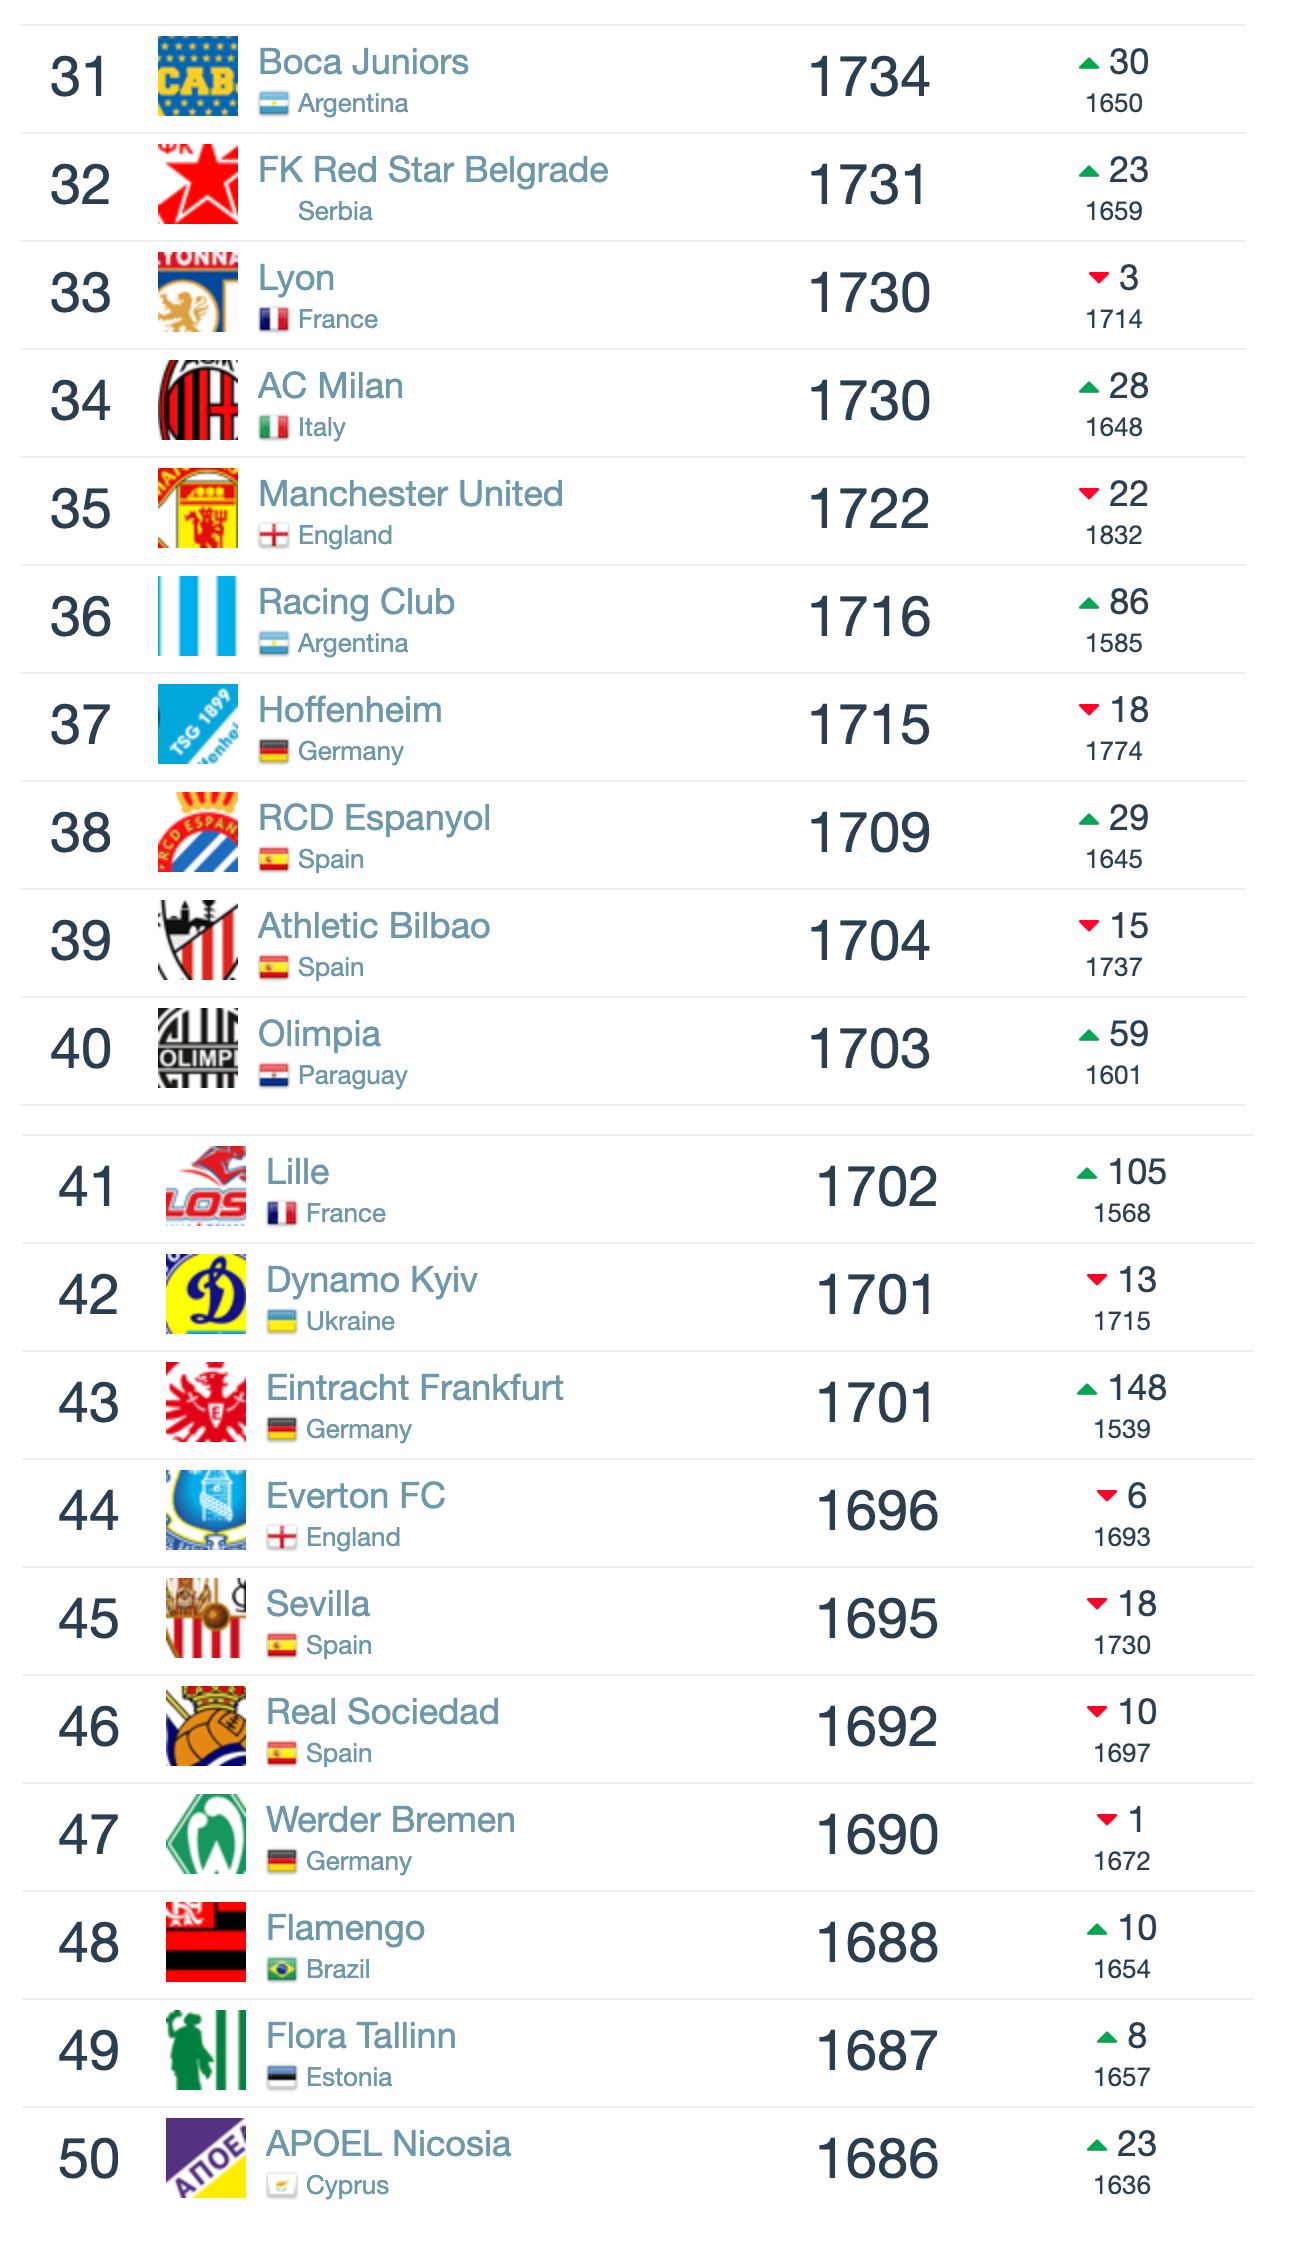 ranking kelab bola sepak dunia sehingga mei 2019, man. united di tempat #35